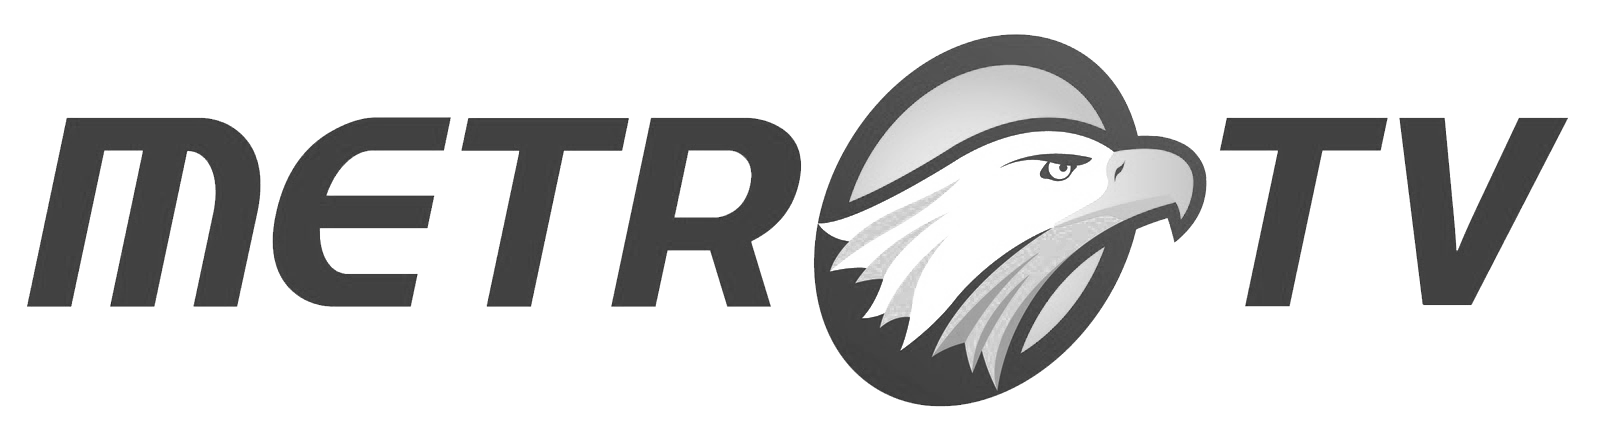 MetroTV_Logo_2010 bw